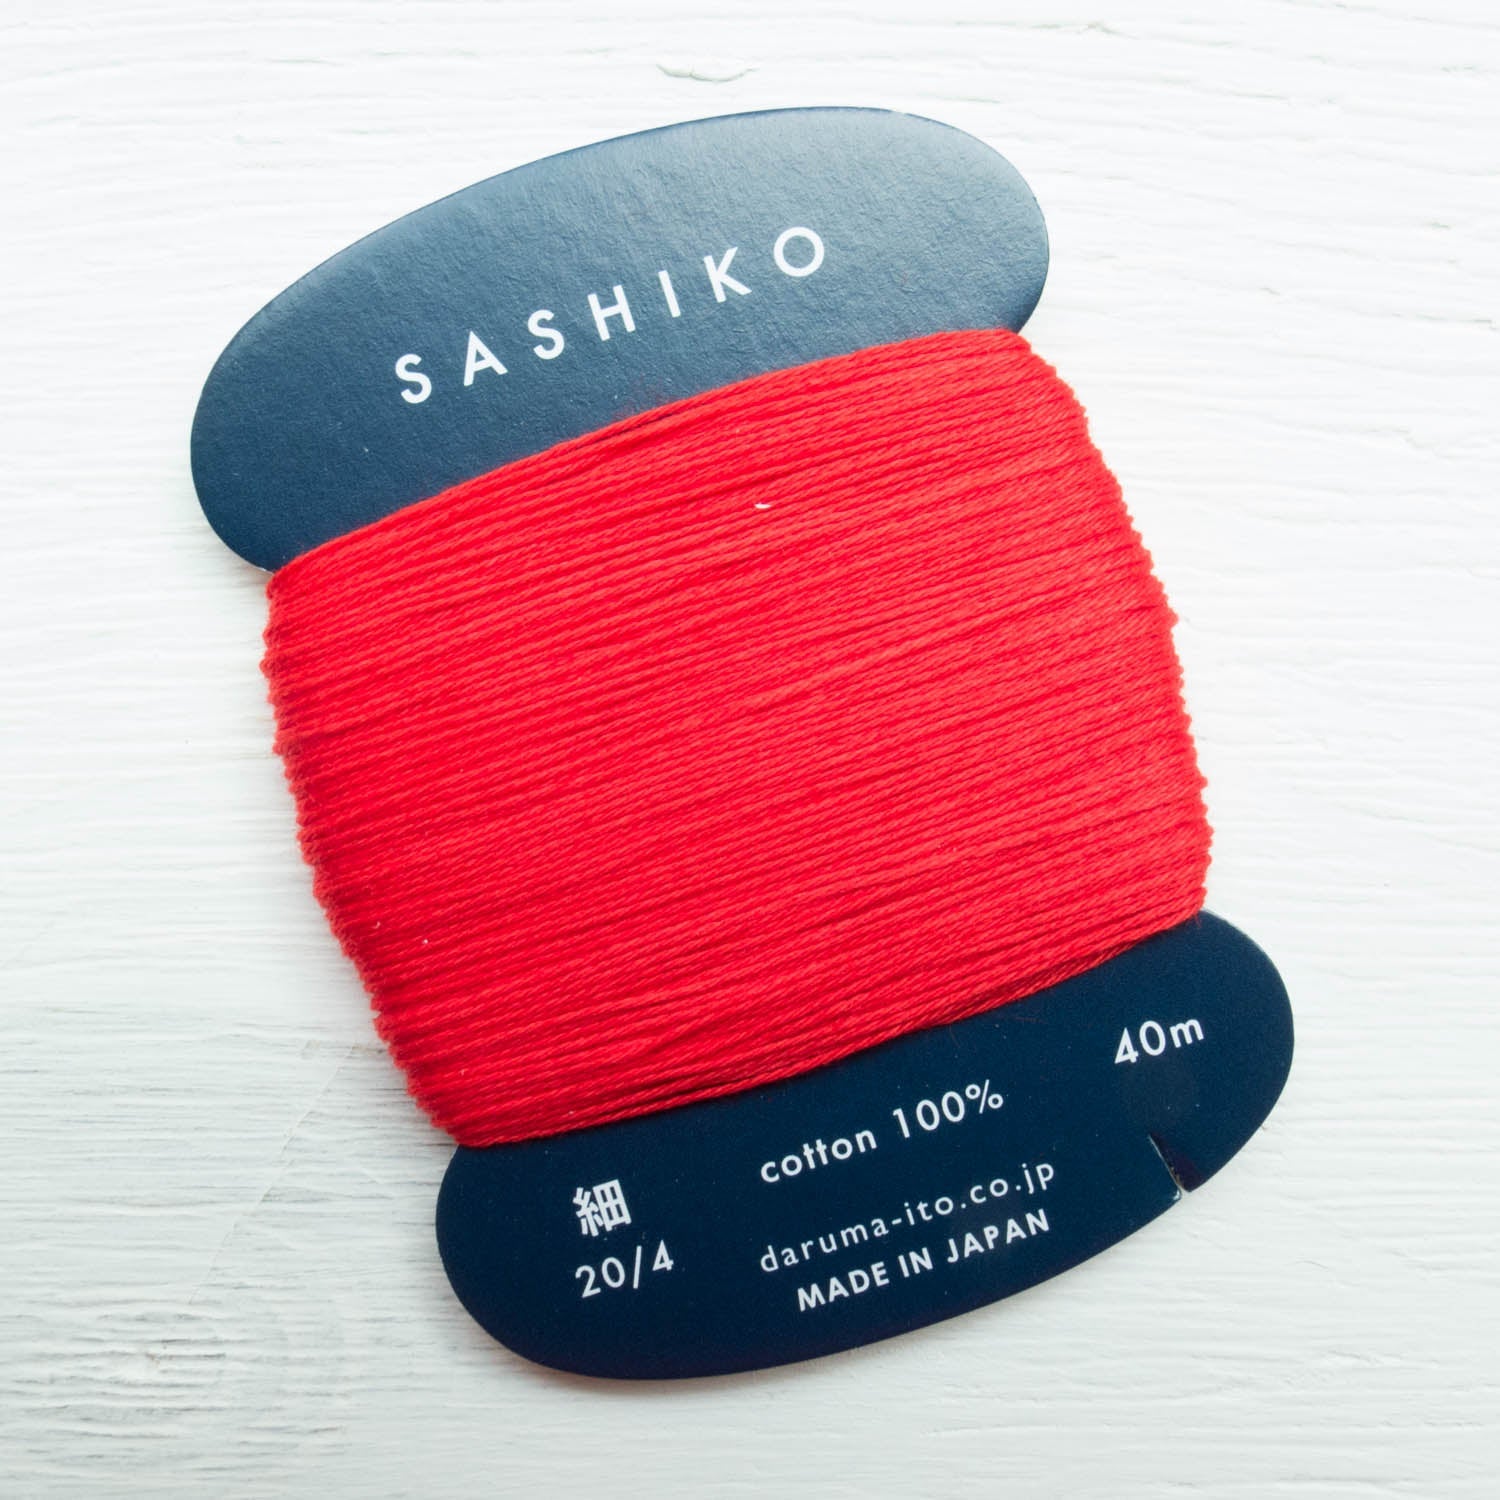 ORIM - Daruma - Sashiko Cotton Thread 20/4 - 0213 - Deep Red